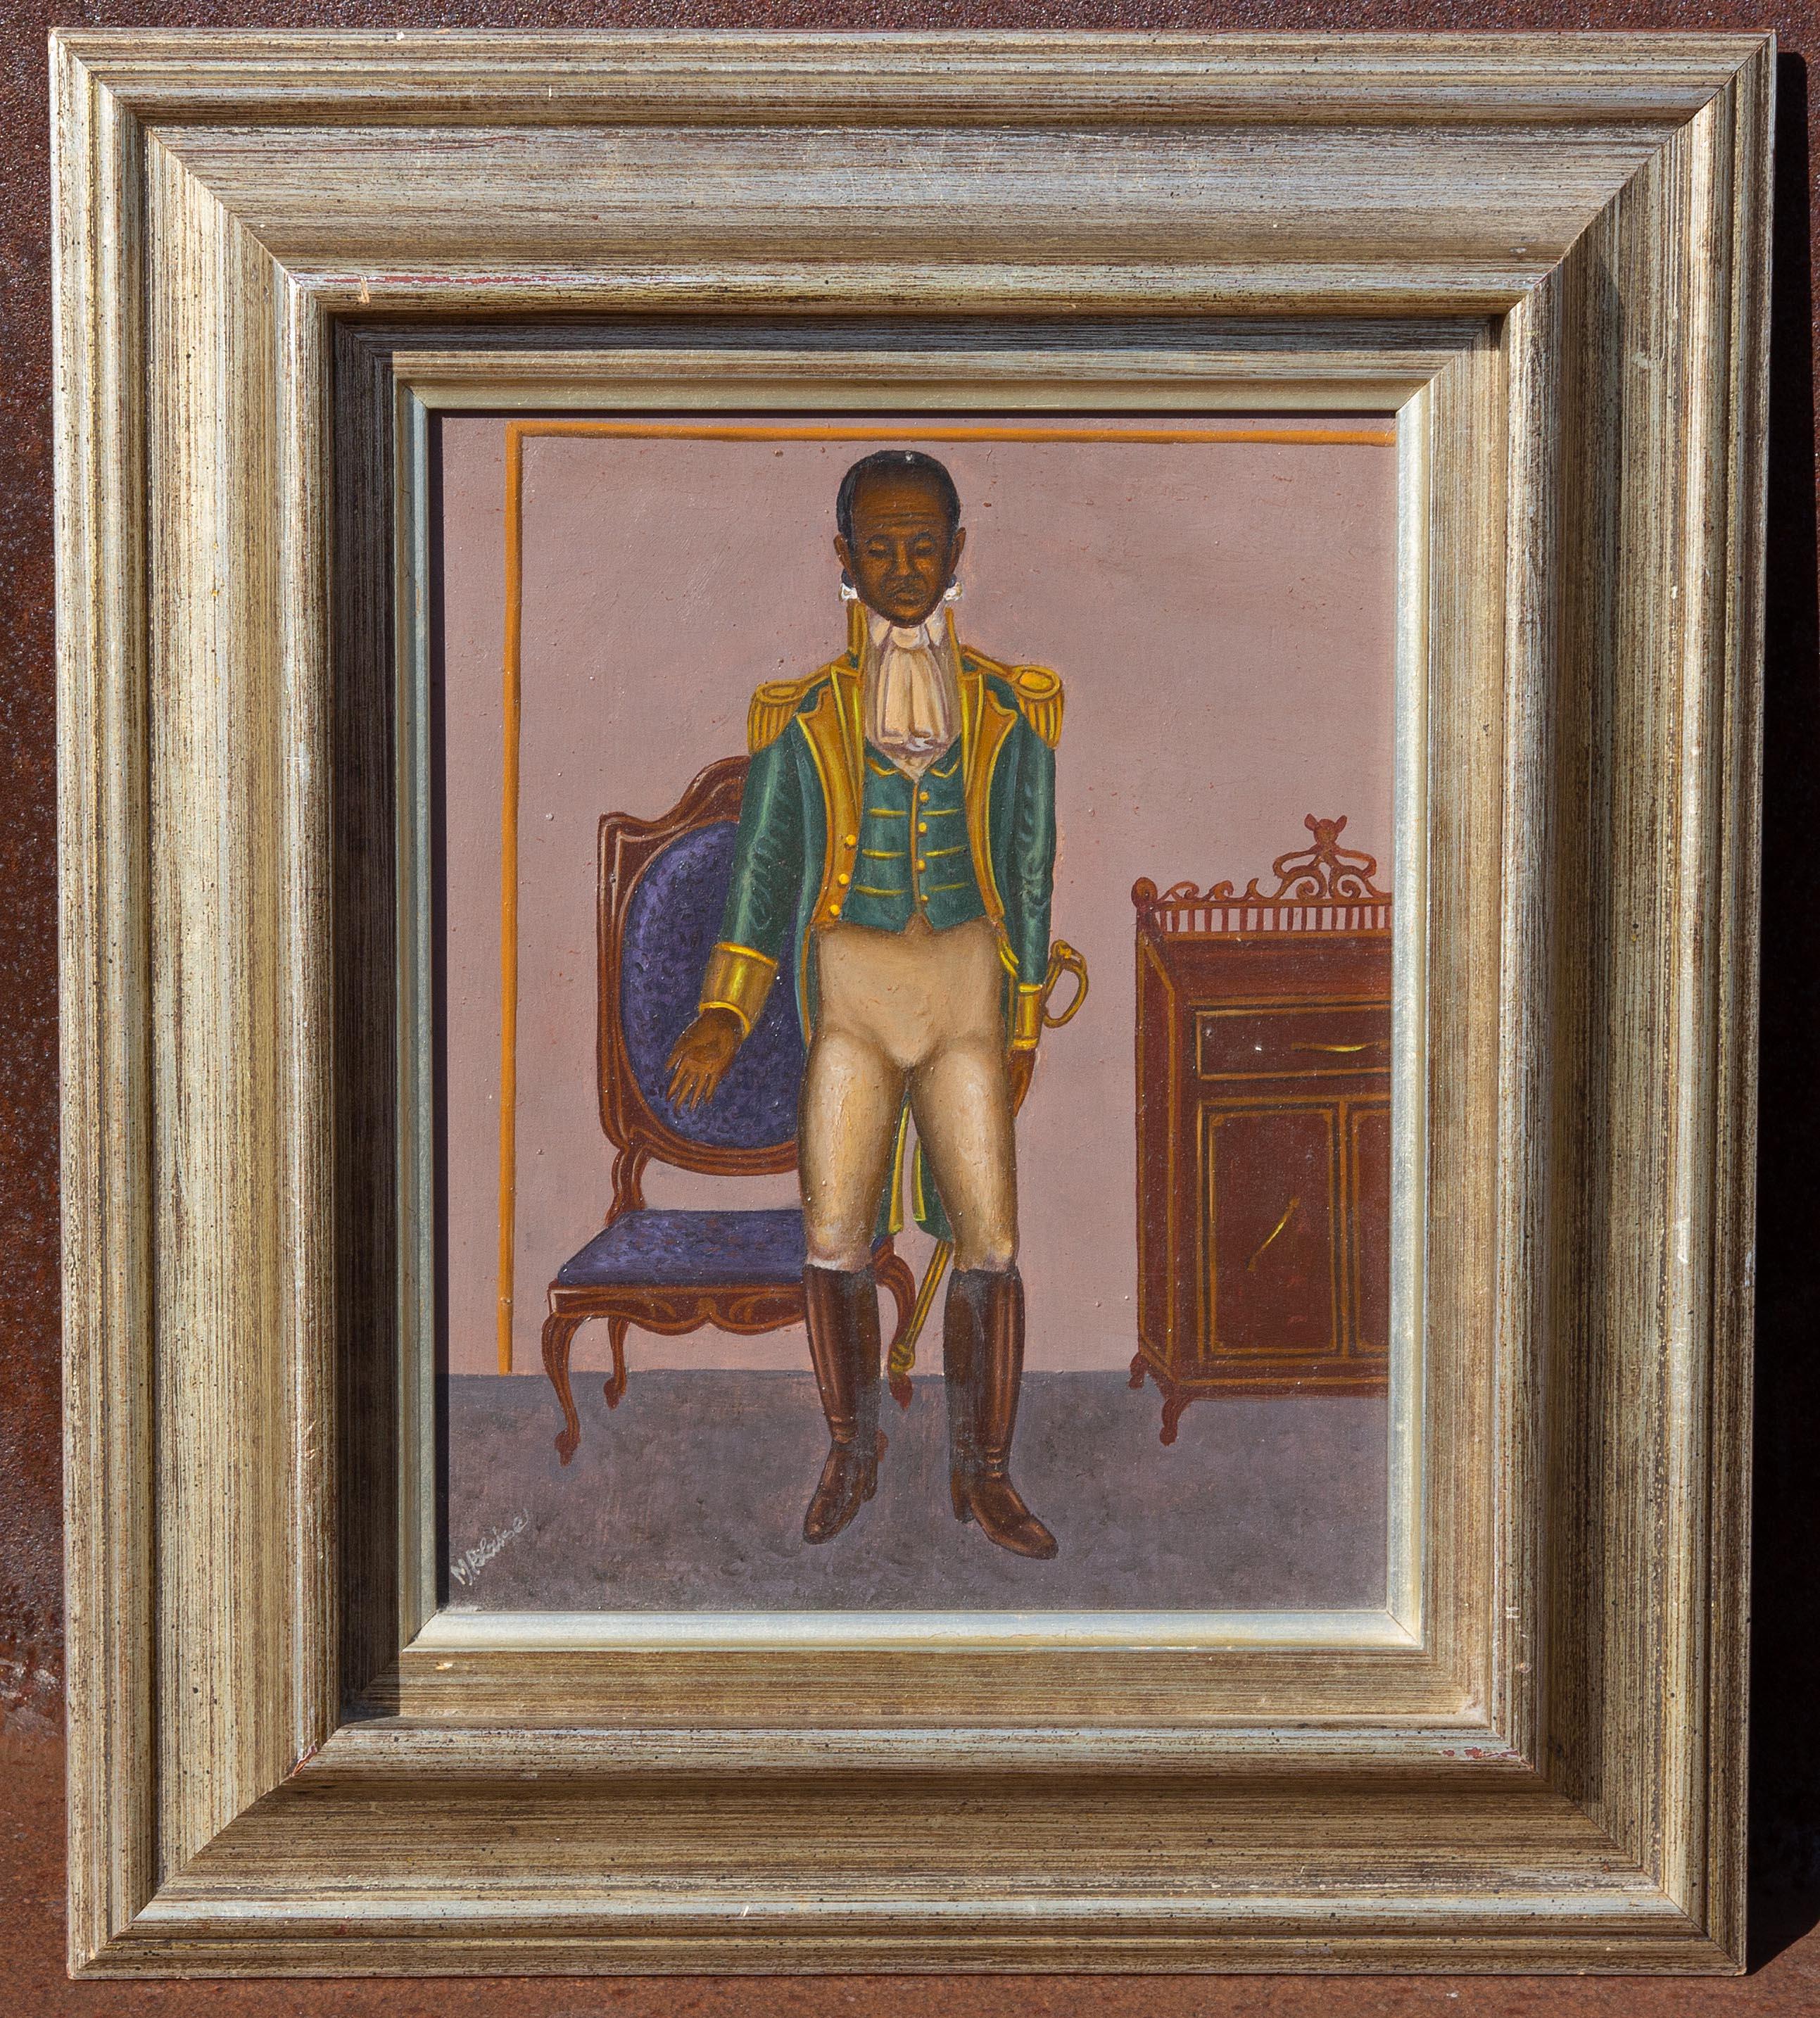 General Toussaint Louverture by Hattian Artist Serge Moleon Blaise - Painting by Unknown